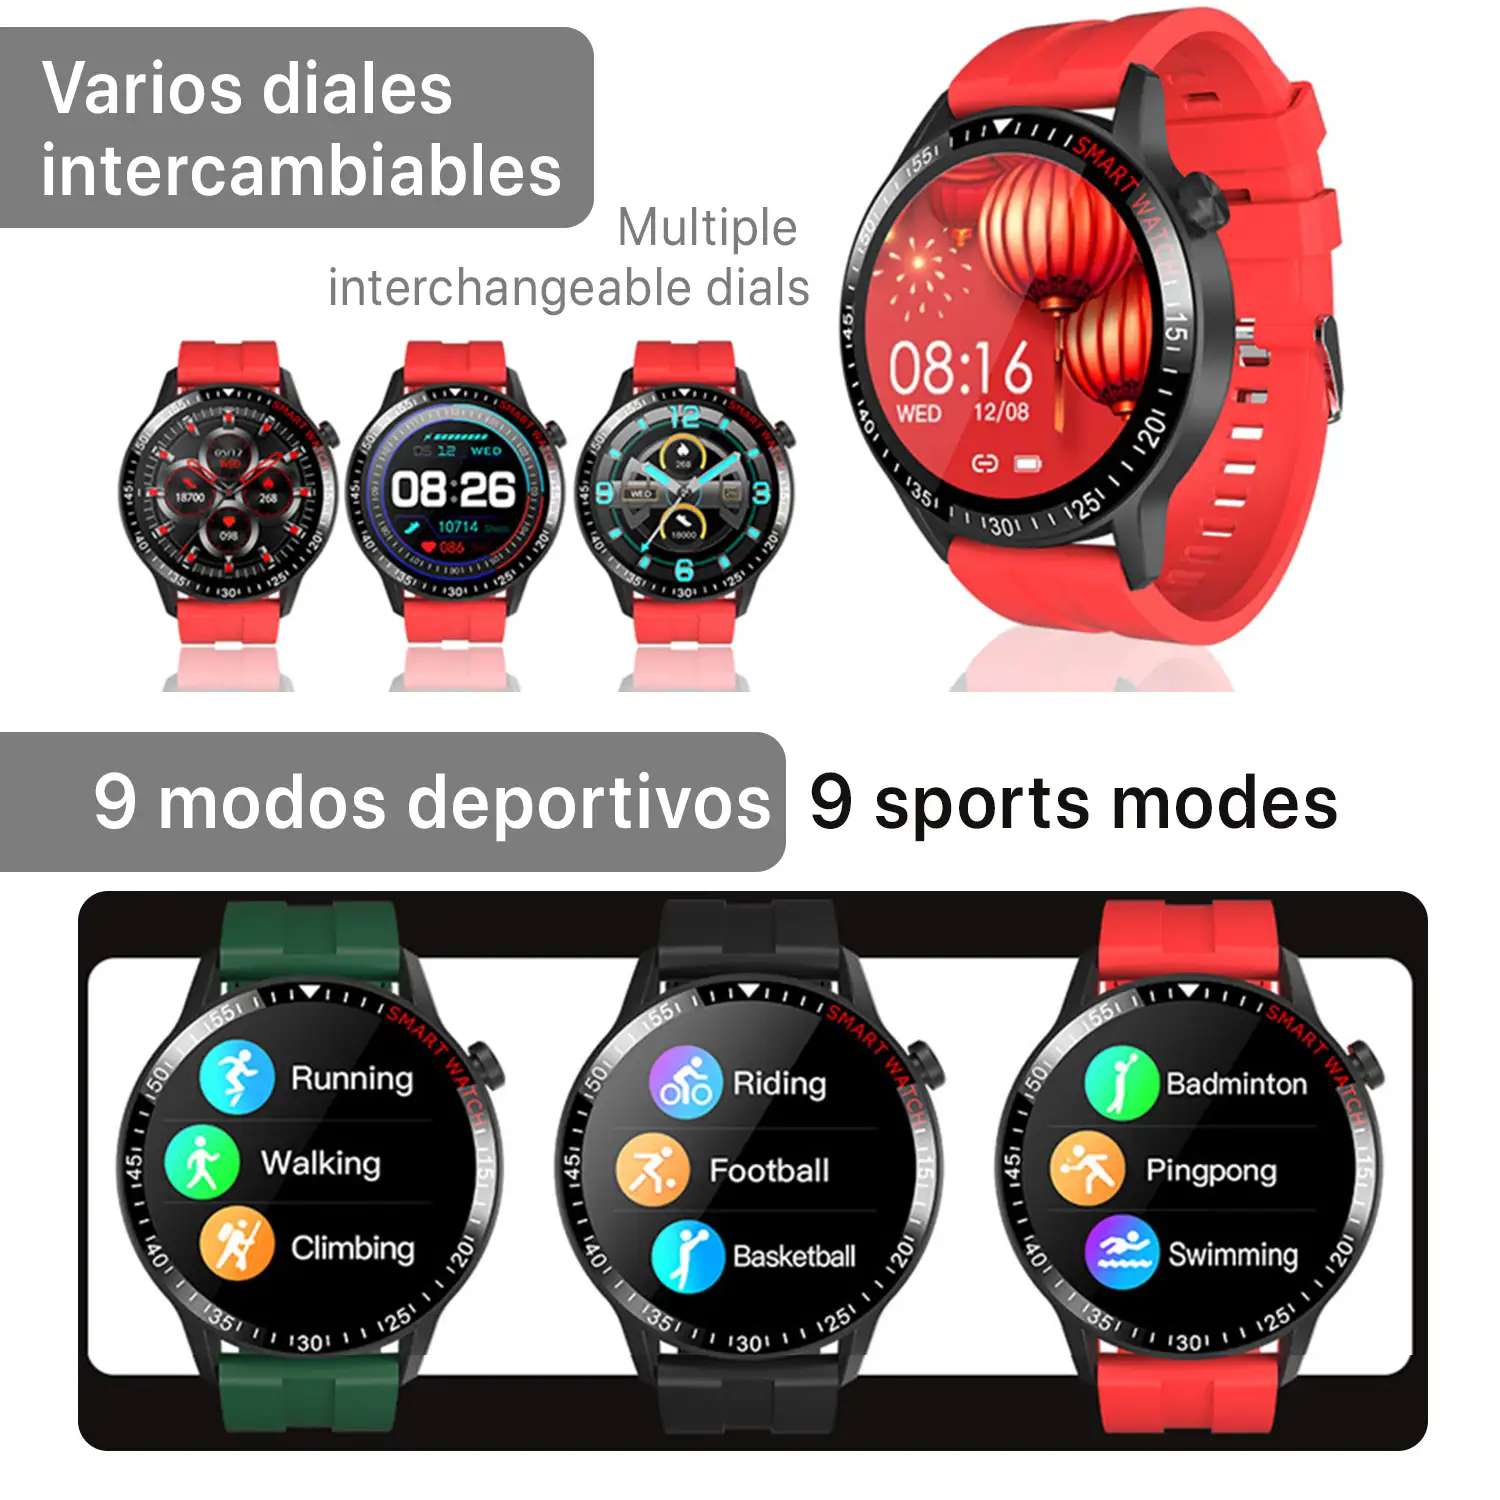 Smartwatch B30 con modo multideporte, monitor cardiaco y tensión, notificaciones.